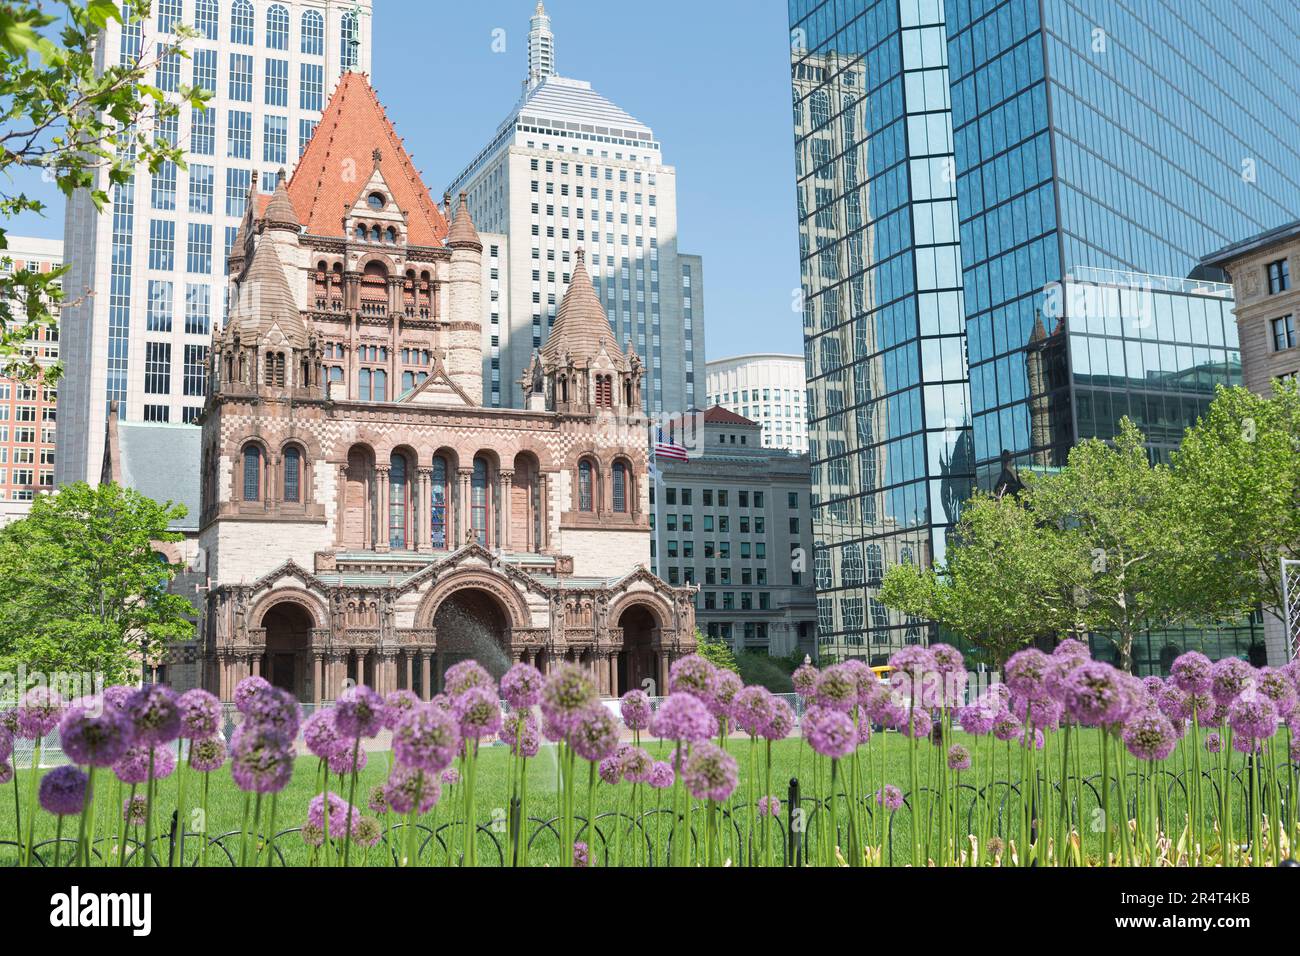 USA, Massachusetts, Boston, Trinity Church et John Hancock Tower avec des fleurs violettes. Banque D'Images